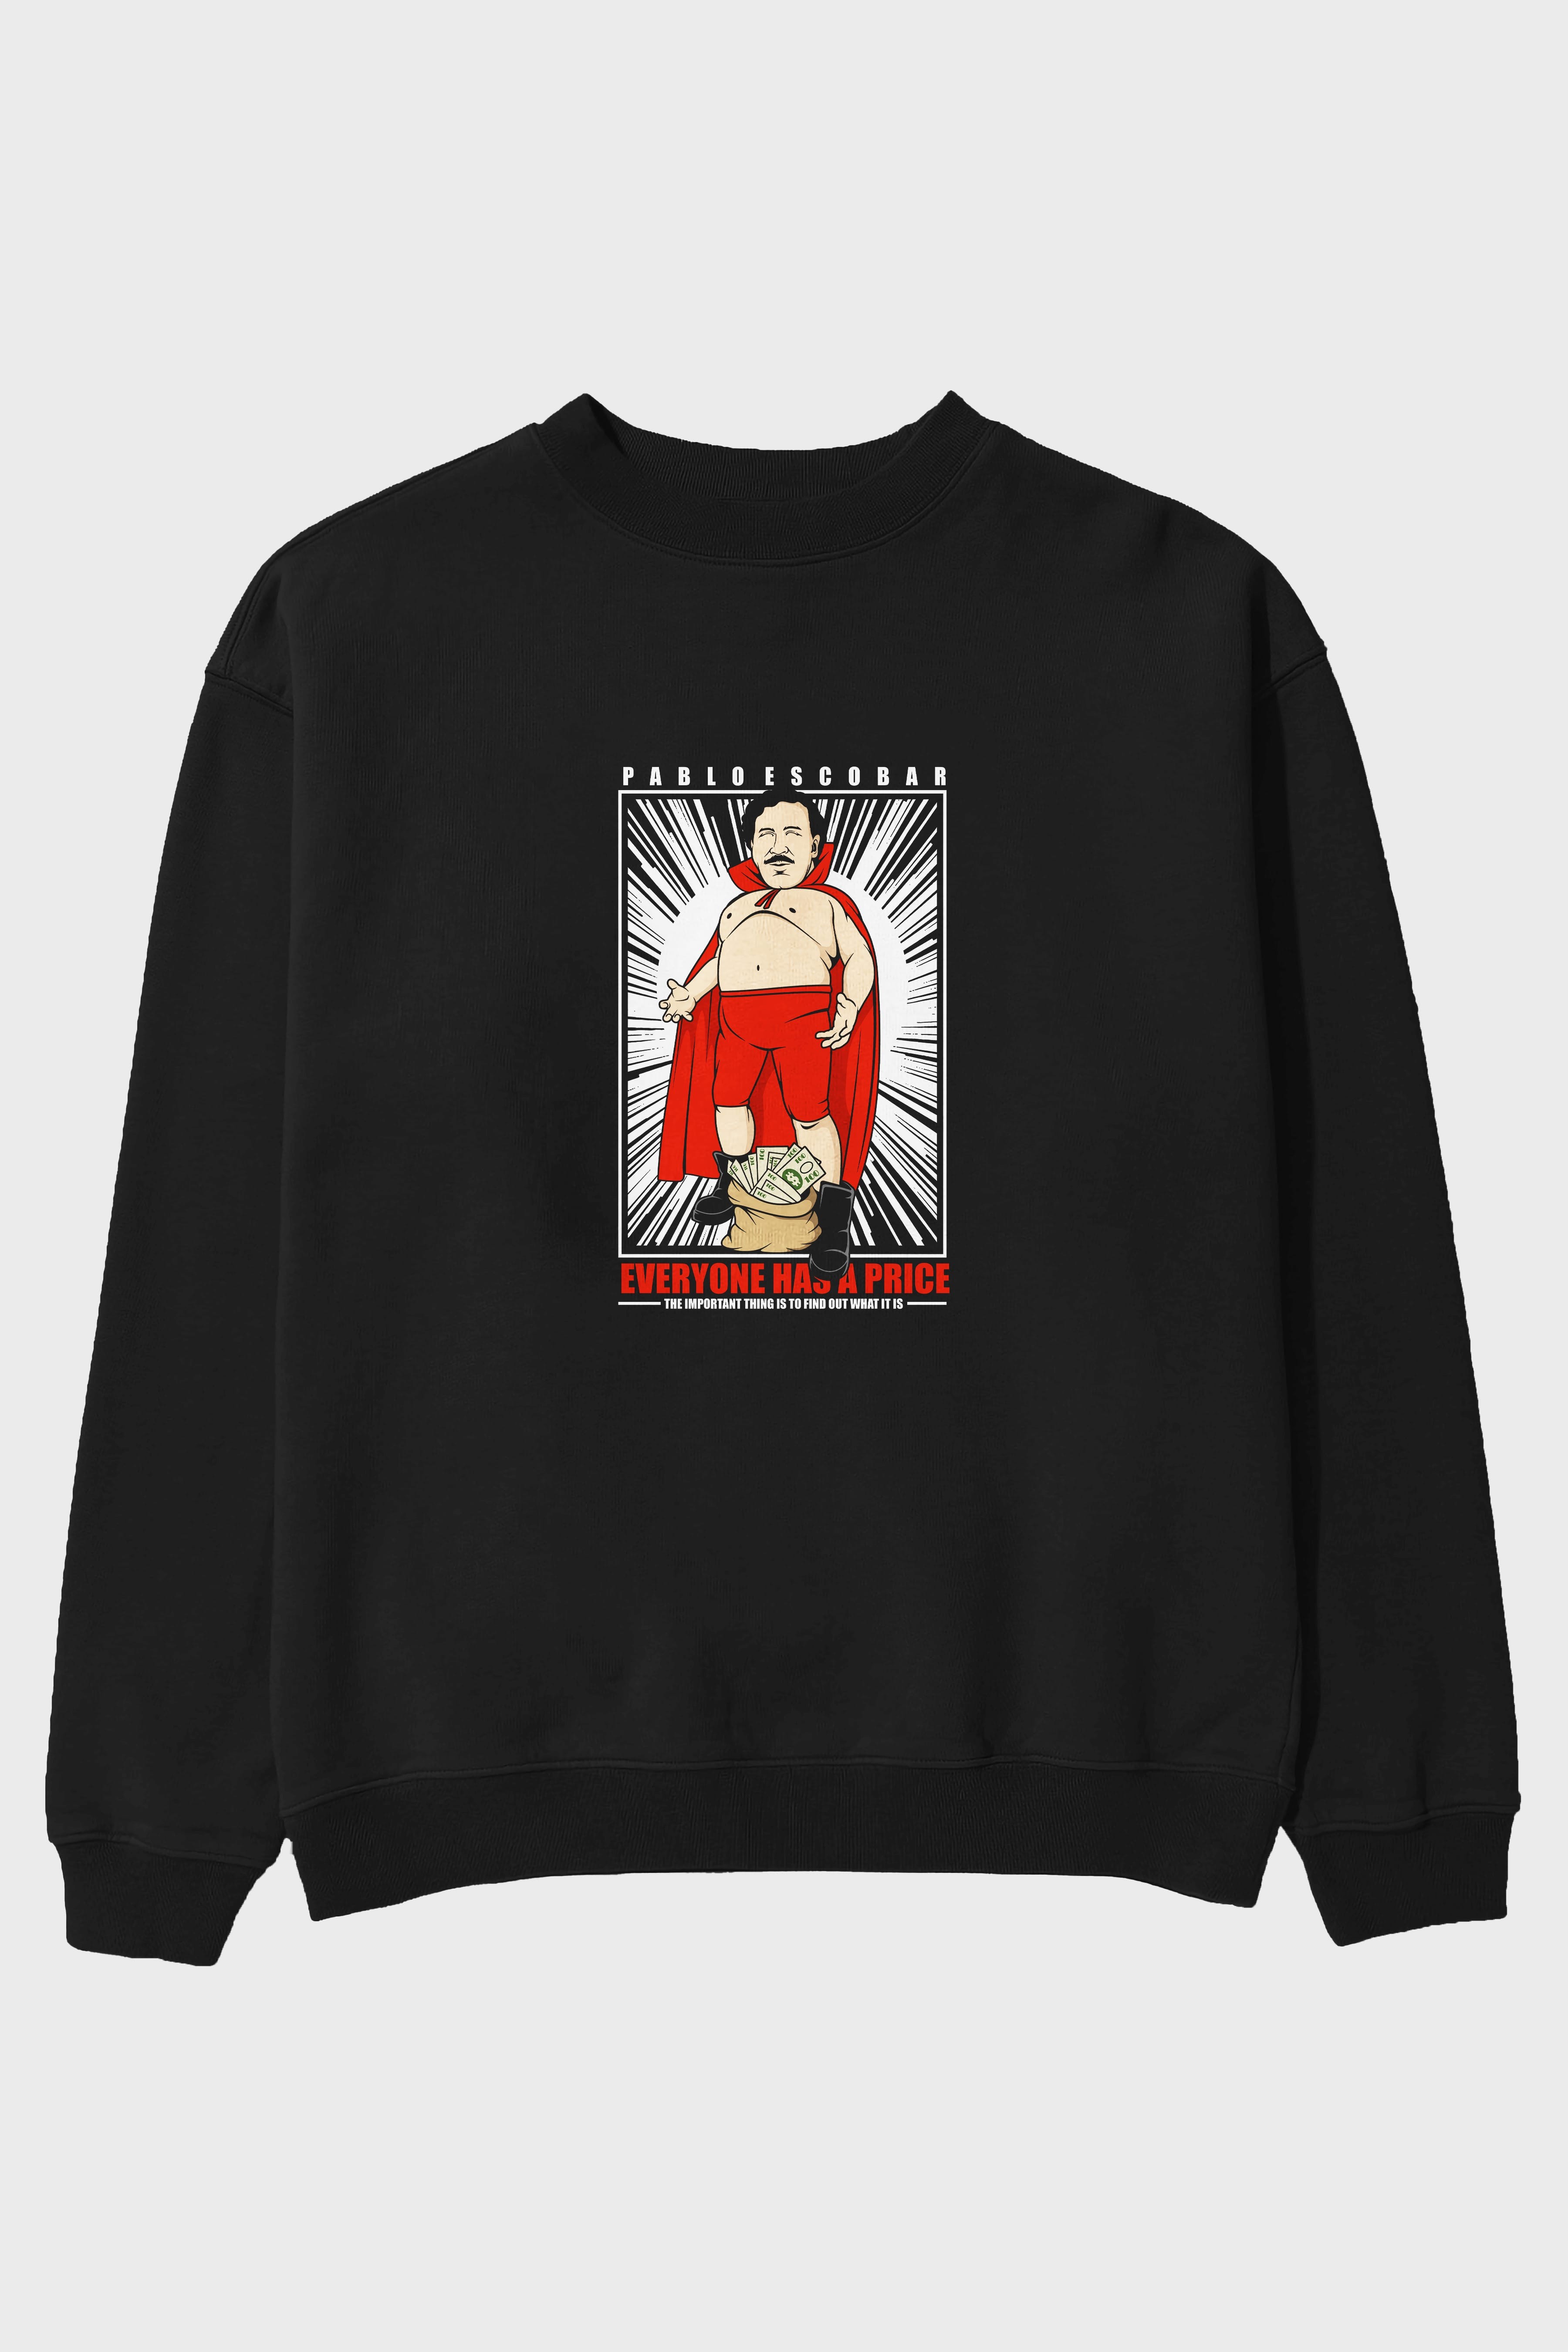 Pablo Escobar Luchador Ön Baskılı Oversize Sweatshirt Erkek Kadın Unisex